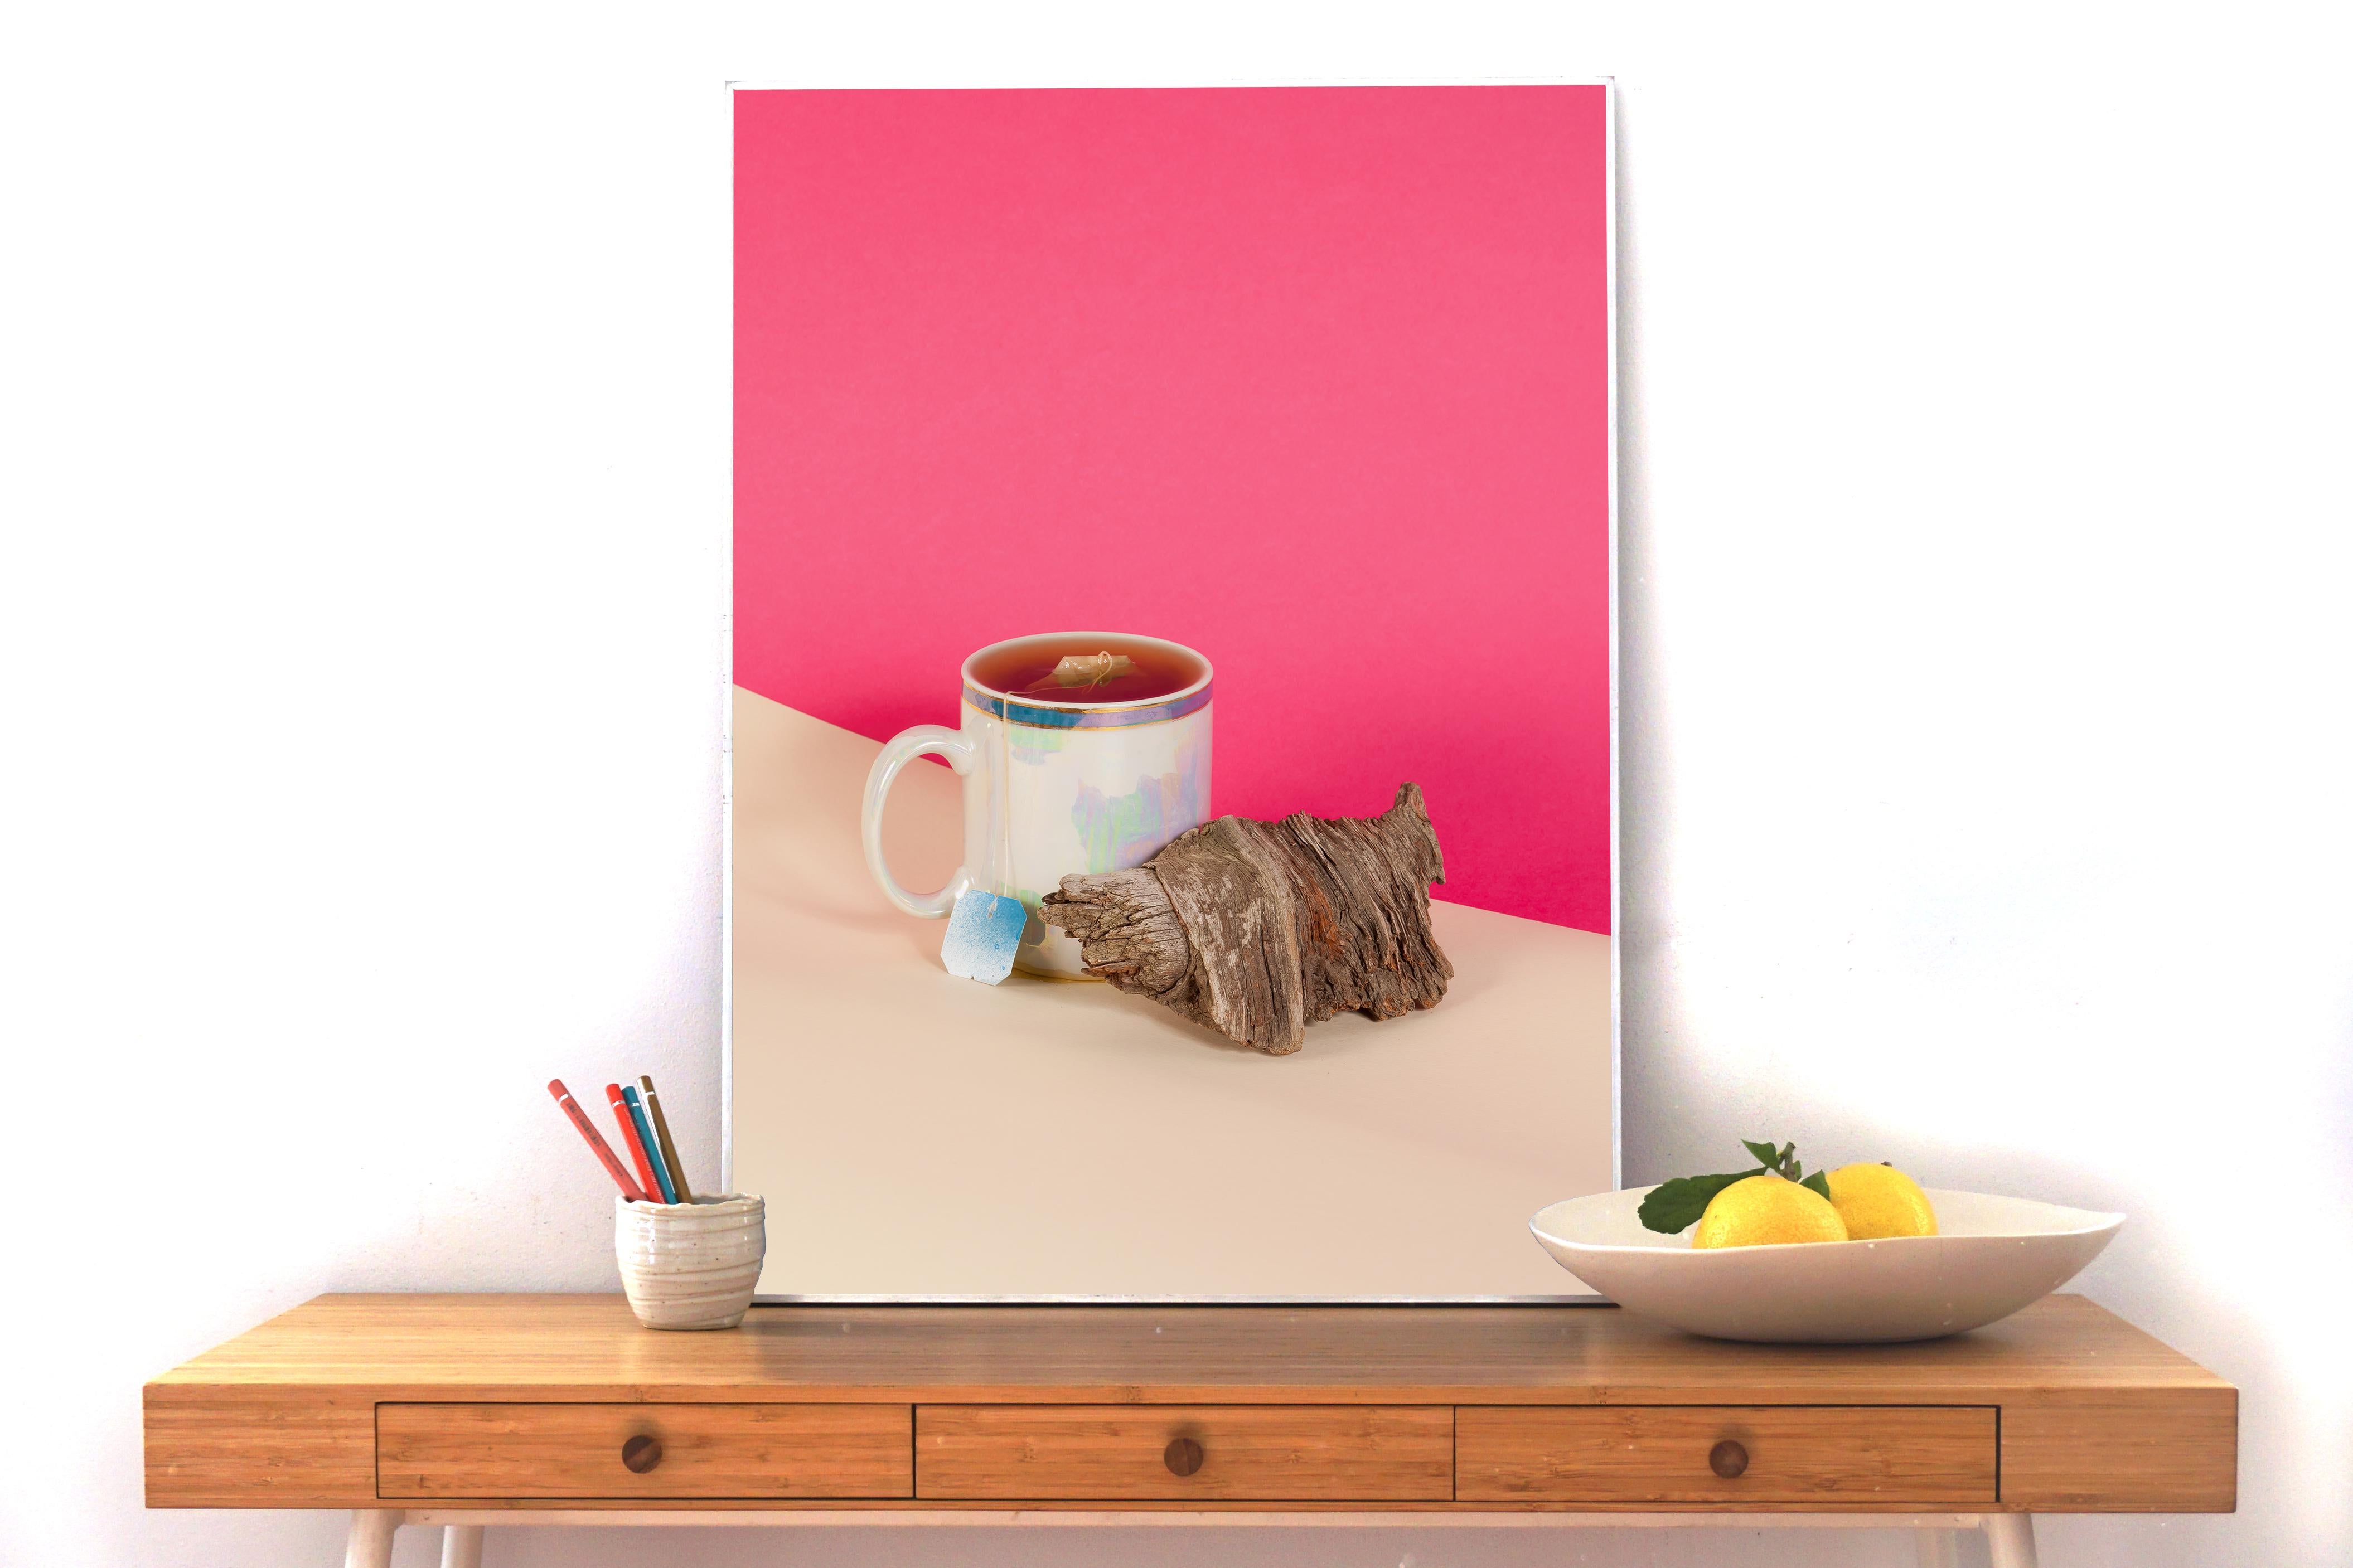 Scène de nature morte sur fond rose, tasse de thé, croissant en bois, rétro, Giclée  - Photograph de Ryan Rivadeneyra